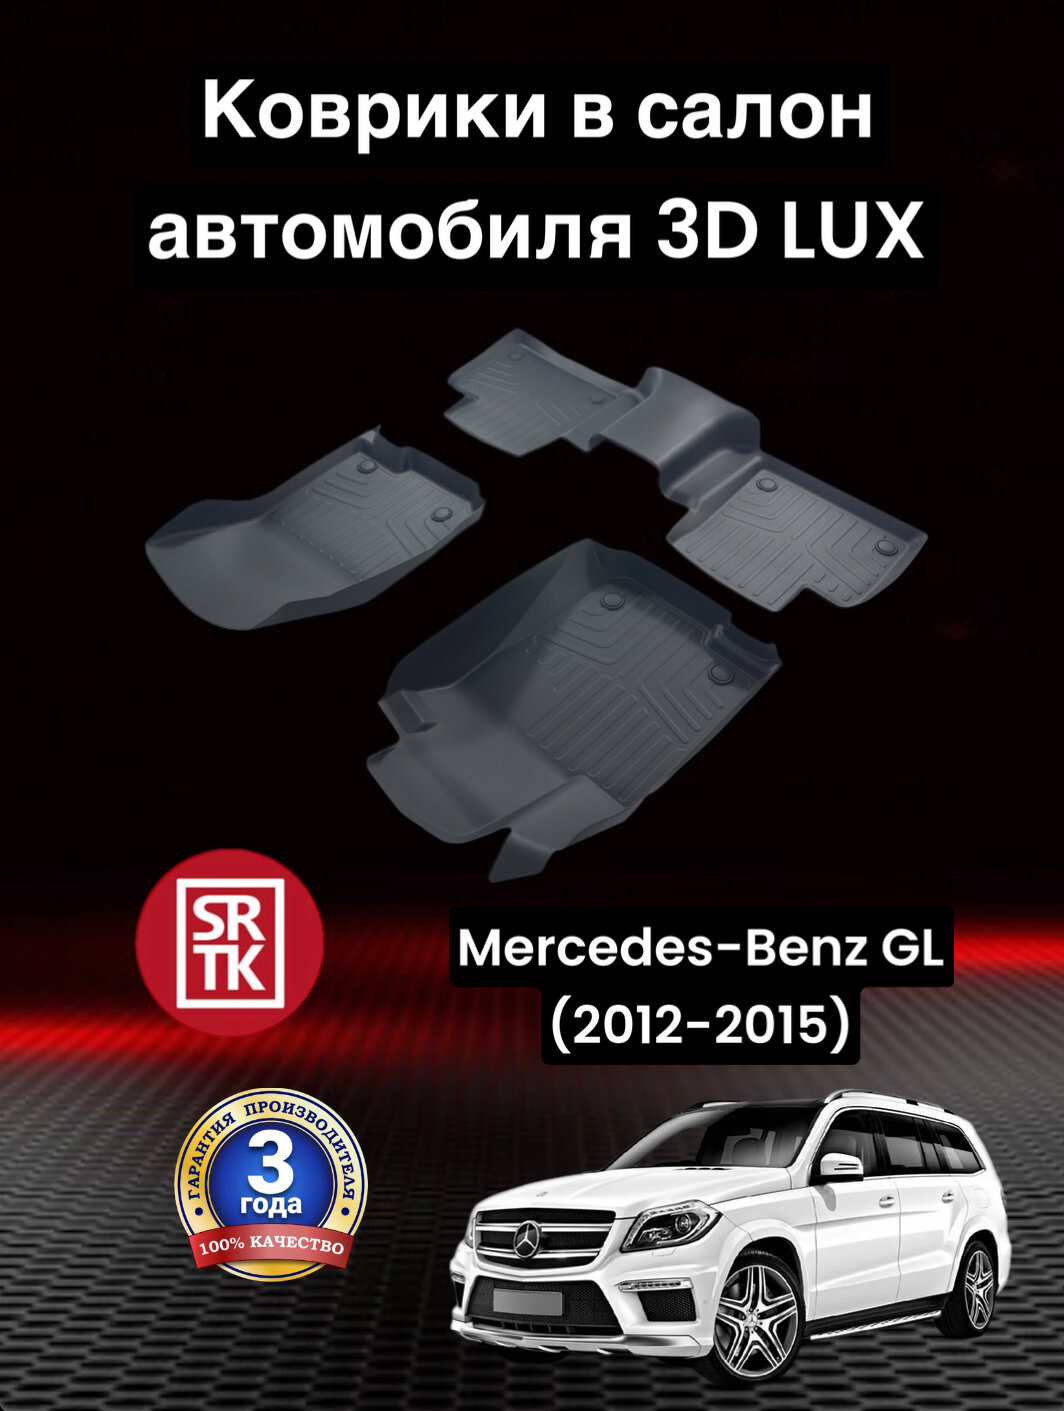 Коврики резиновые Мерседес Бенц ГЛ (2012-2015)/Mercedes-Benz GL (2012-2015) 3D LUX SRTK (Саранск) комплект в салон